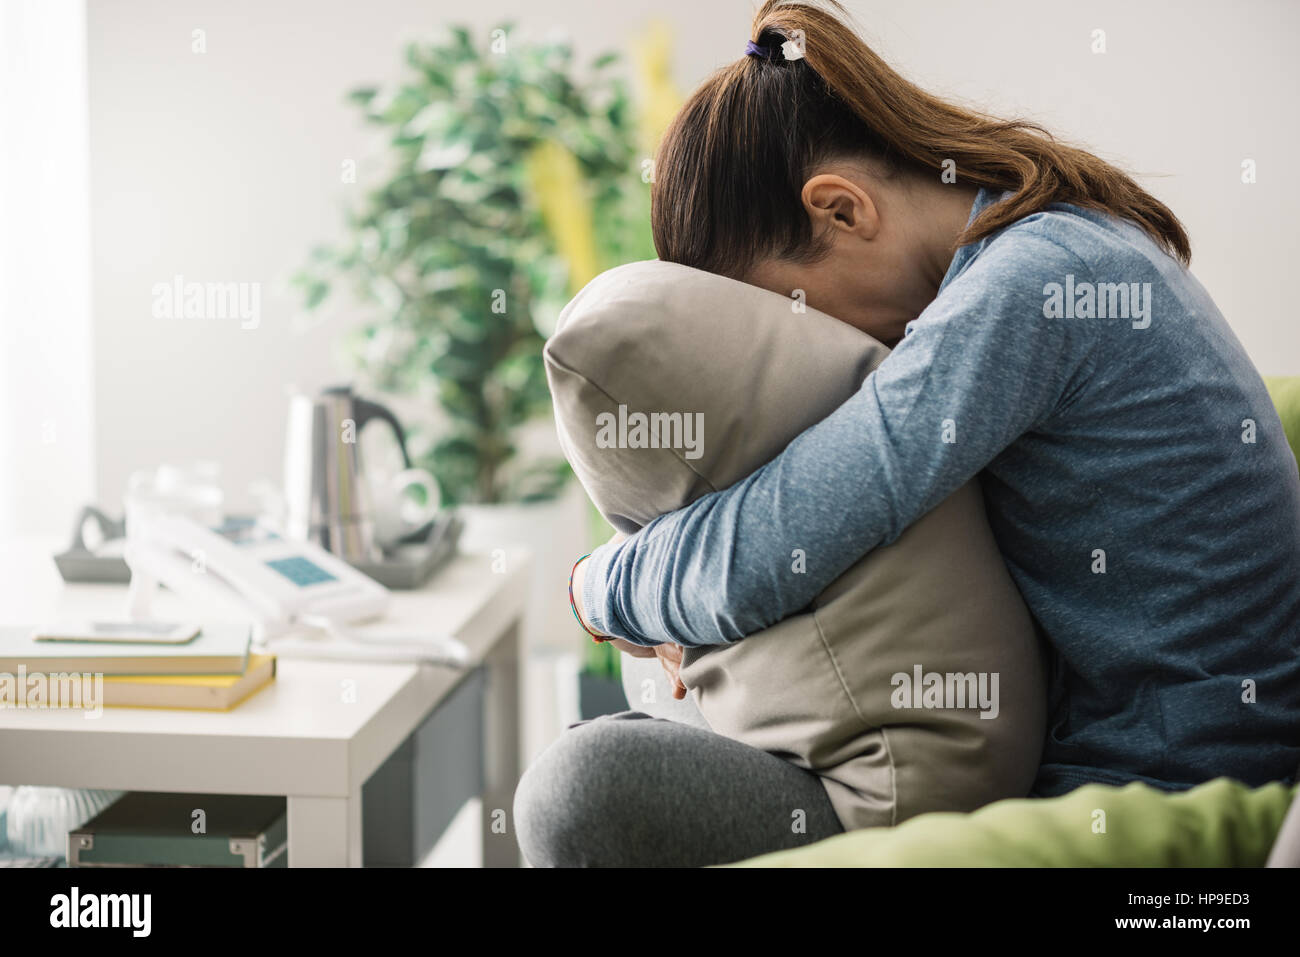 Unglücklich einsam depressiv Frau zu Hause, sie sitzt auf der Couch und versteckt ihr Gesicht auf einem Kissen, Depression-Konzept Stockfoto